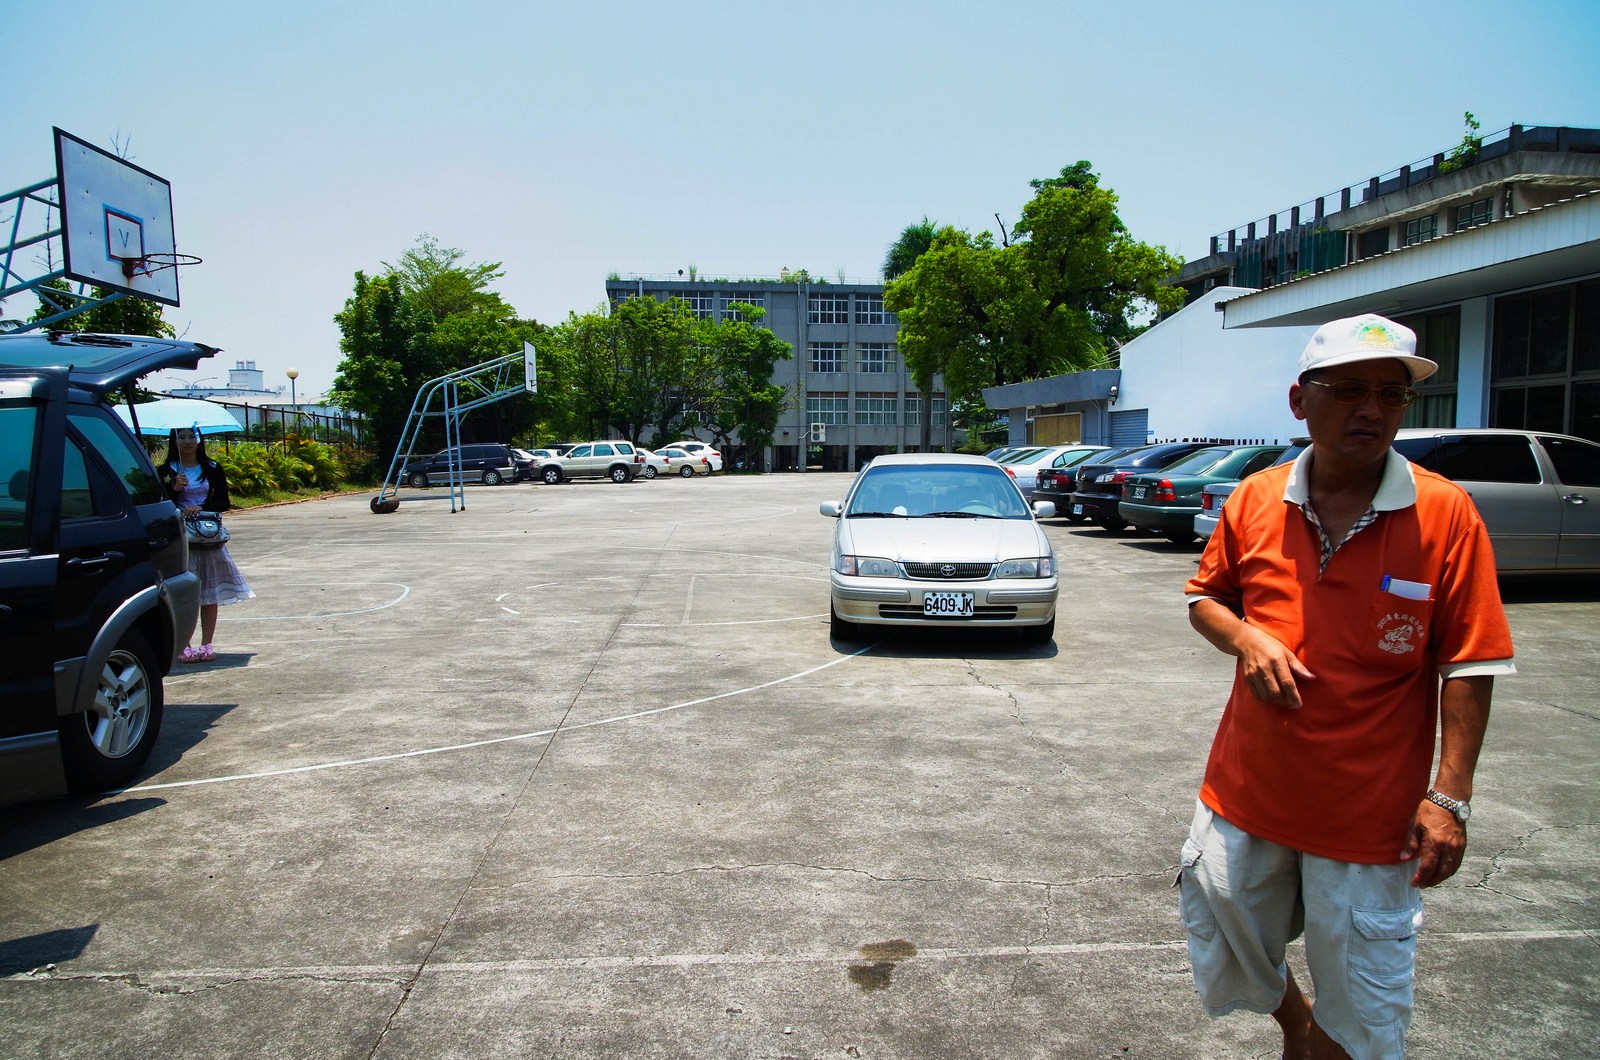 29年建1停車場 東港鎮促增建 疏導車流量 | 文章內置圖片